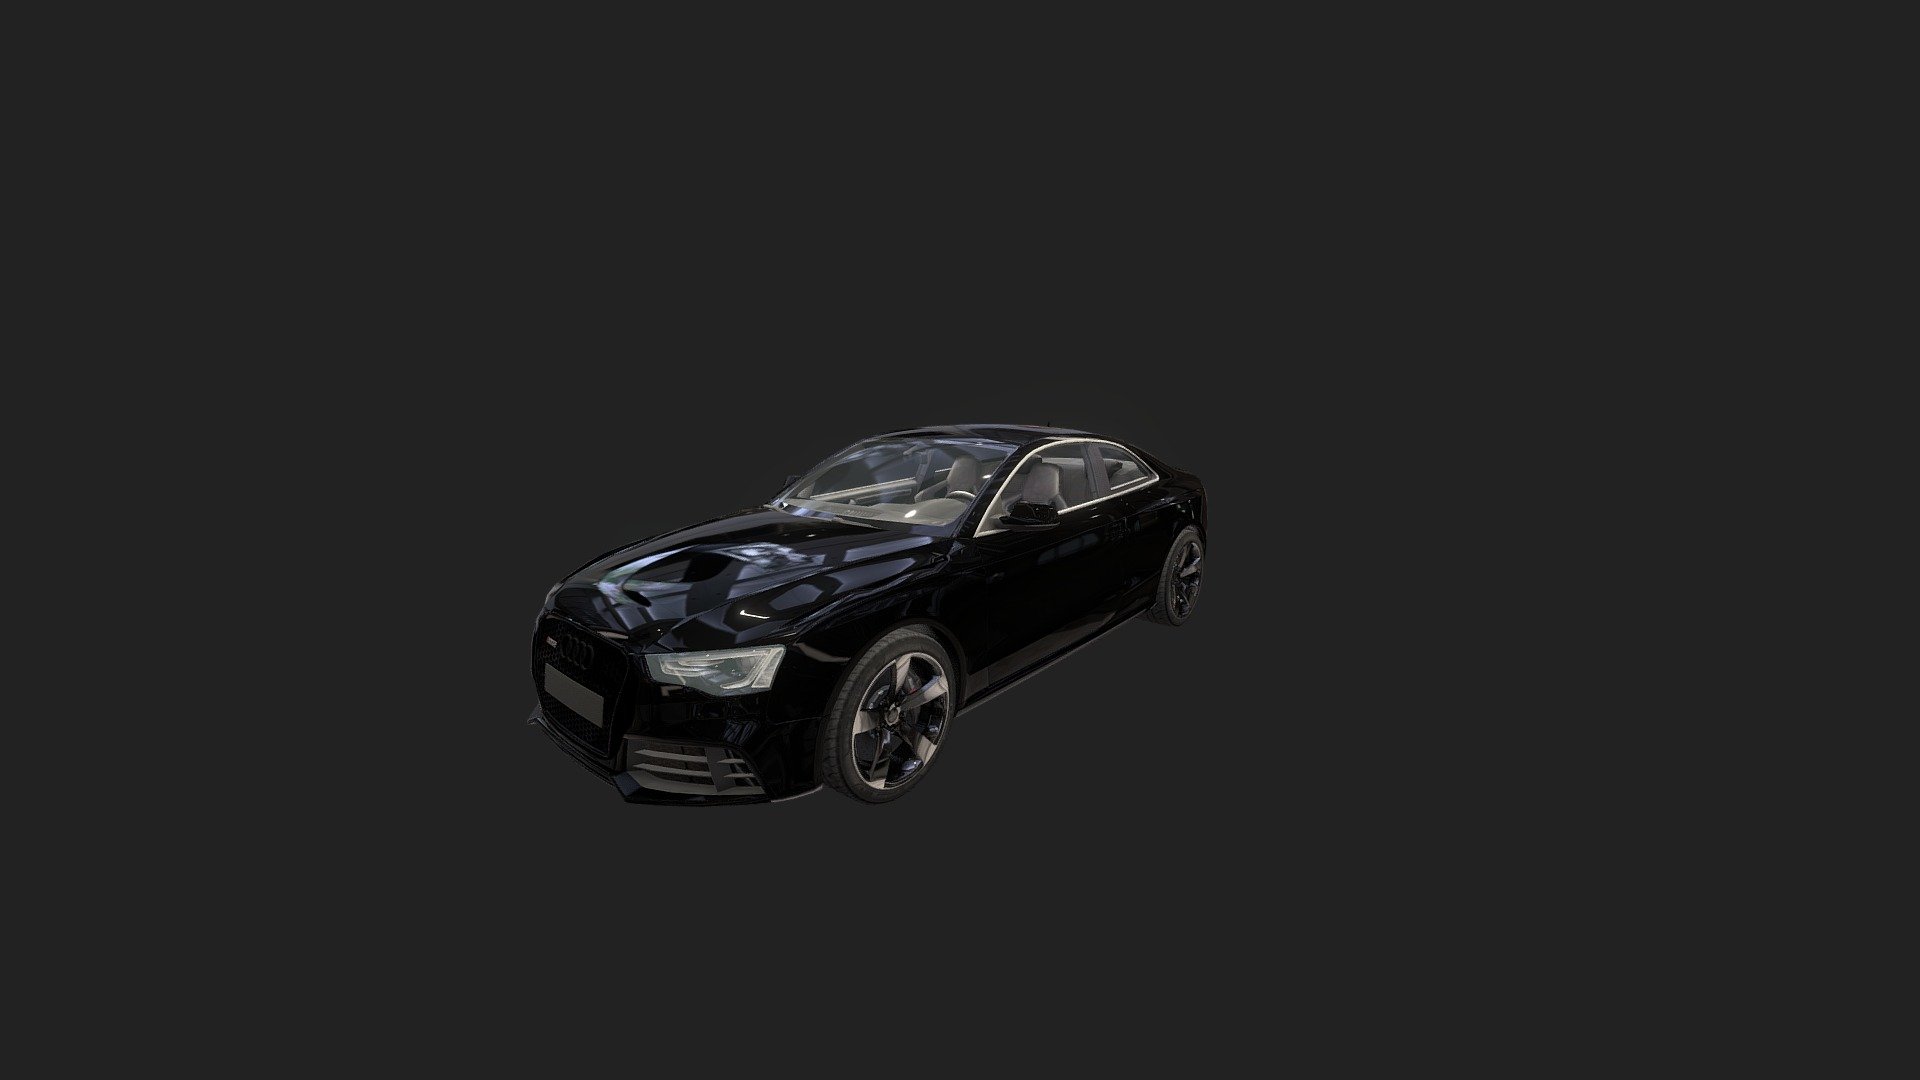 Audi_RS5_B8.5_OK - 3D model by zobly 3d model